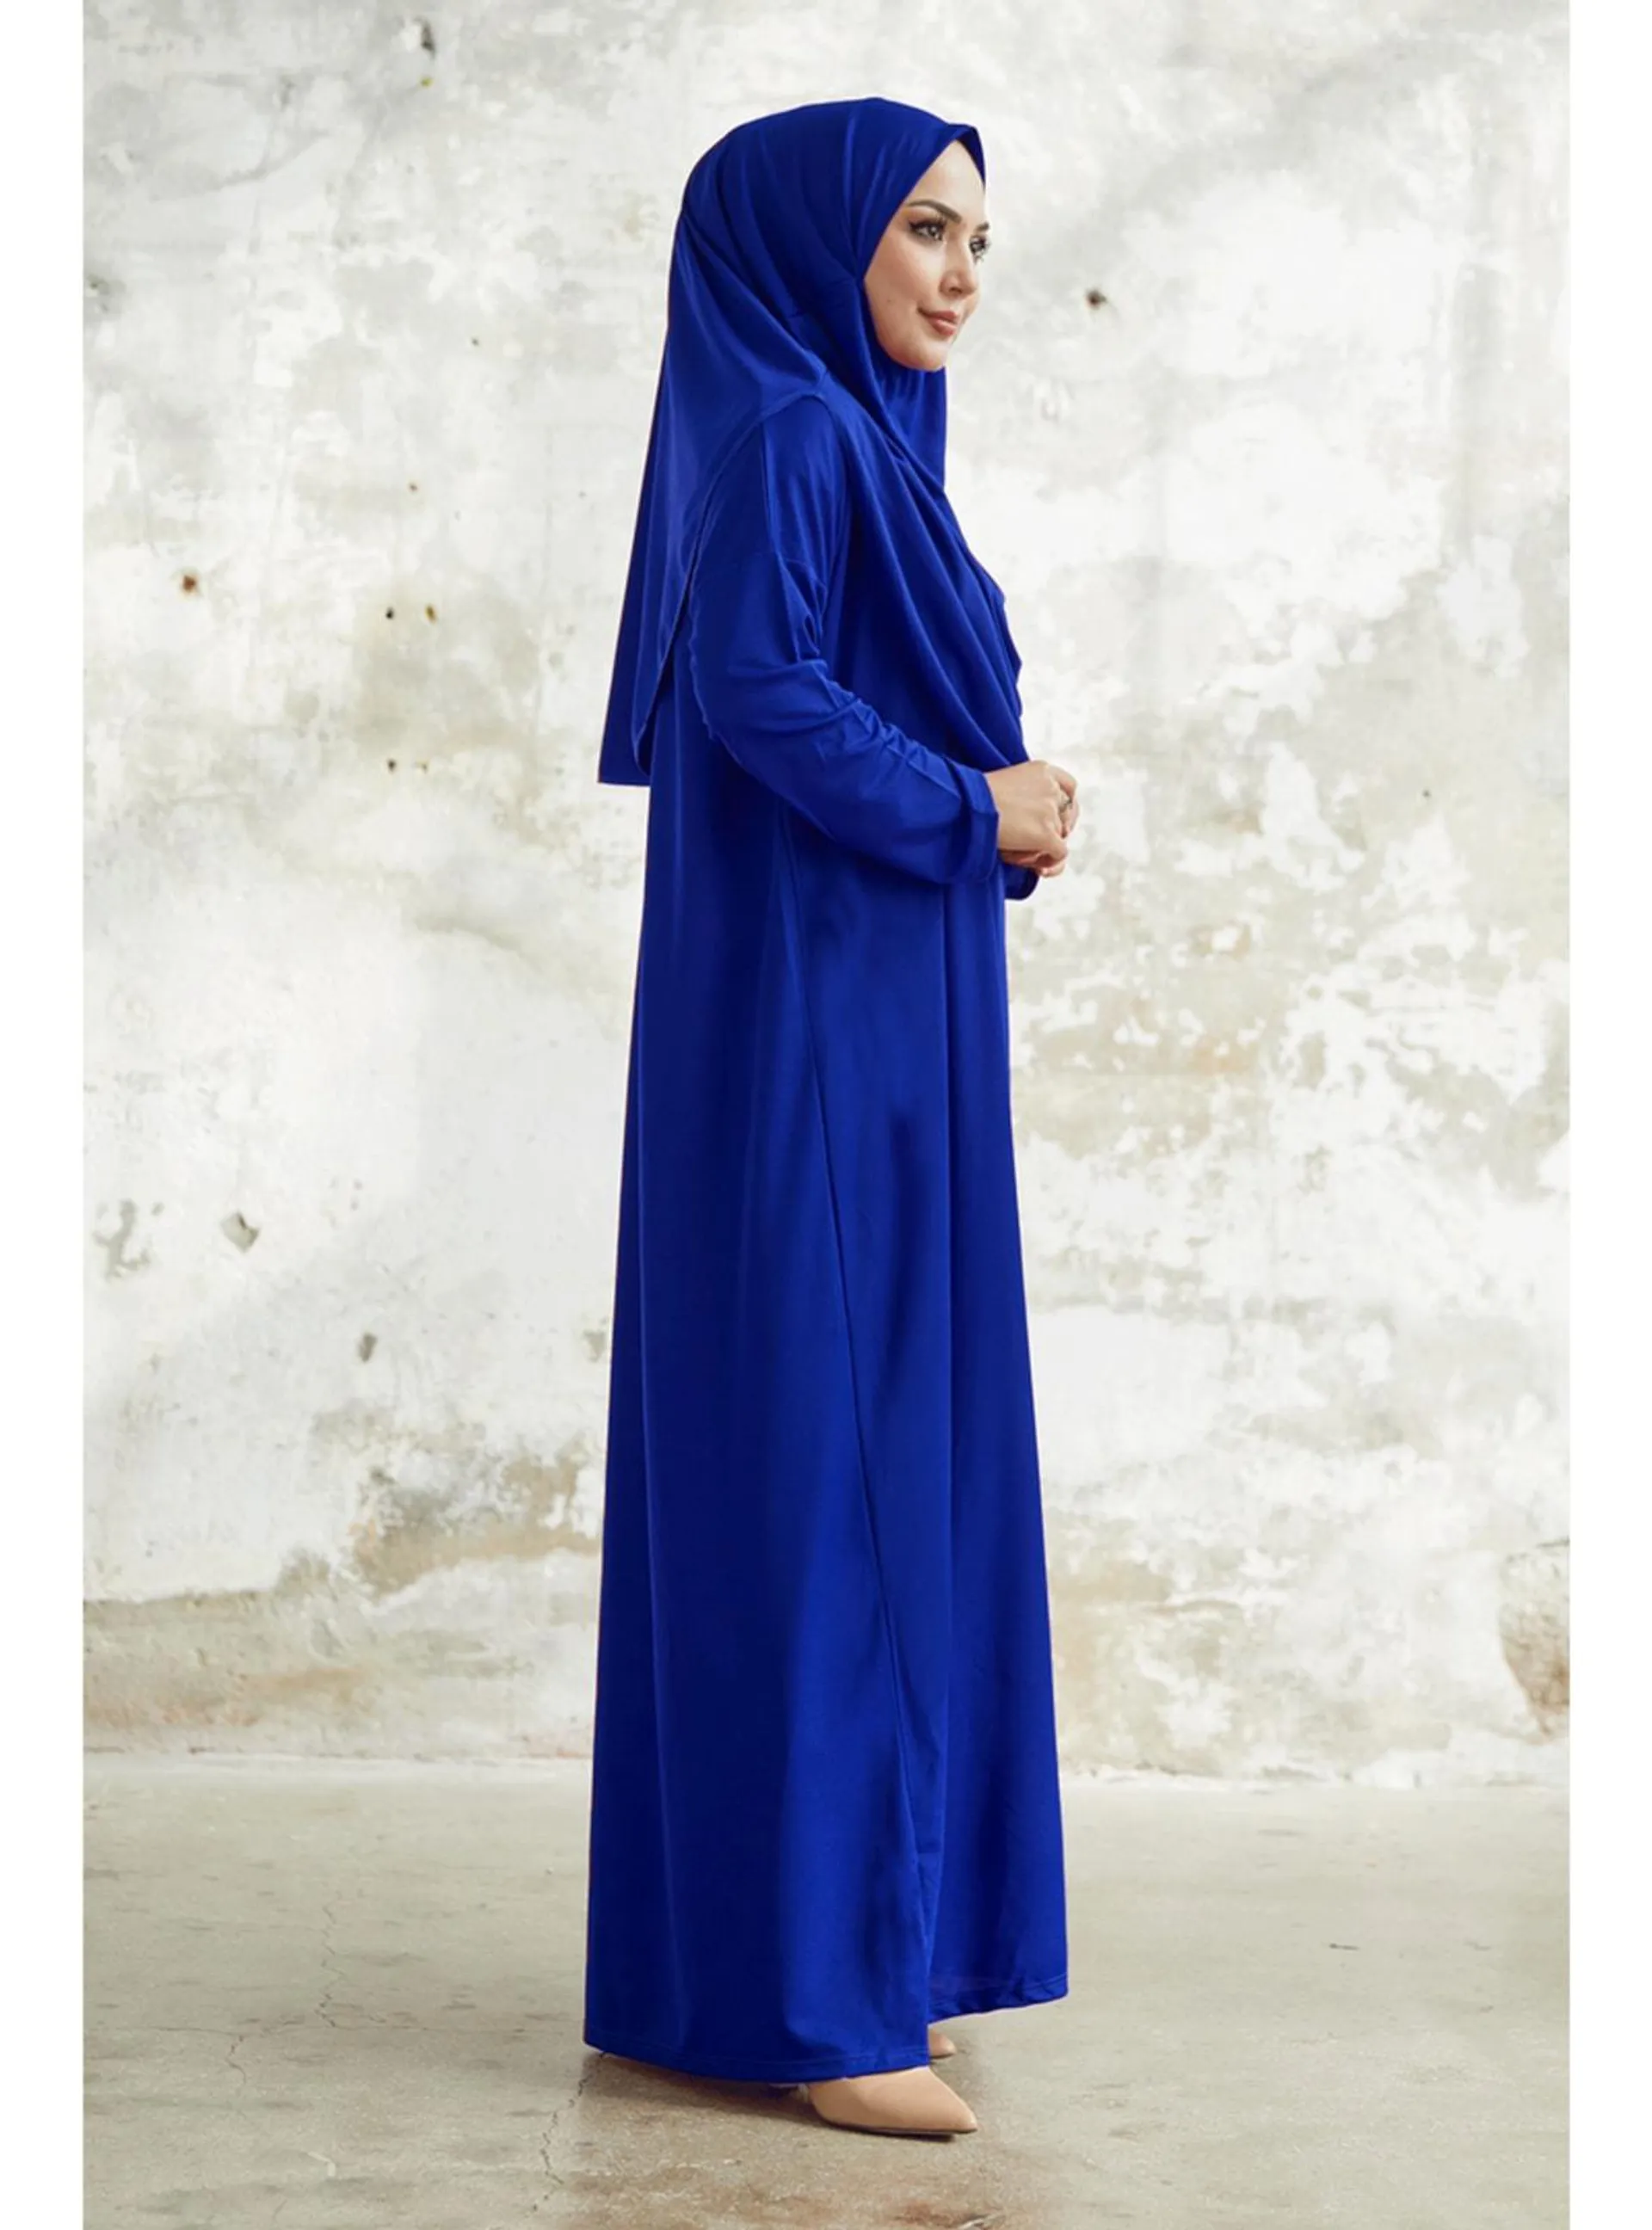 Saxe Blue - Prayer Clothes